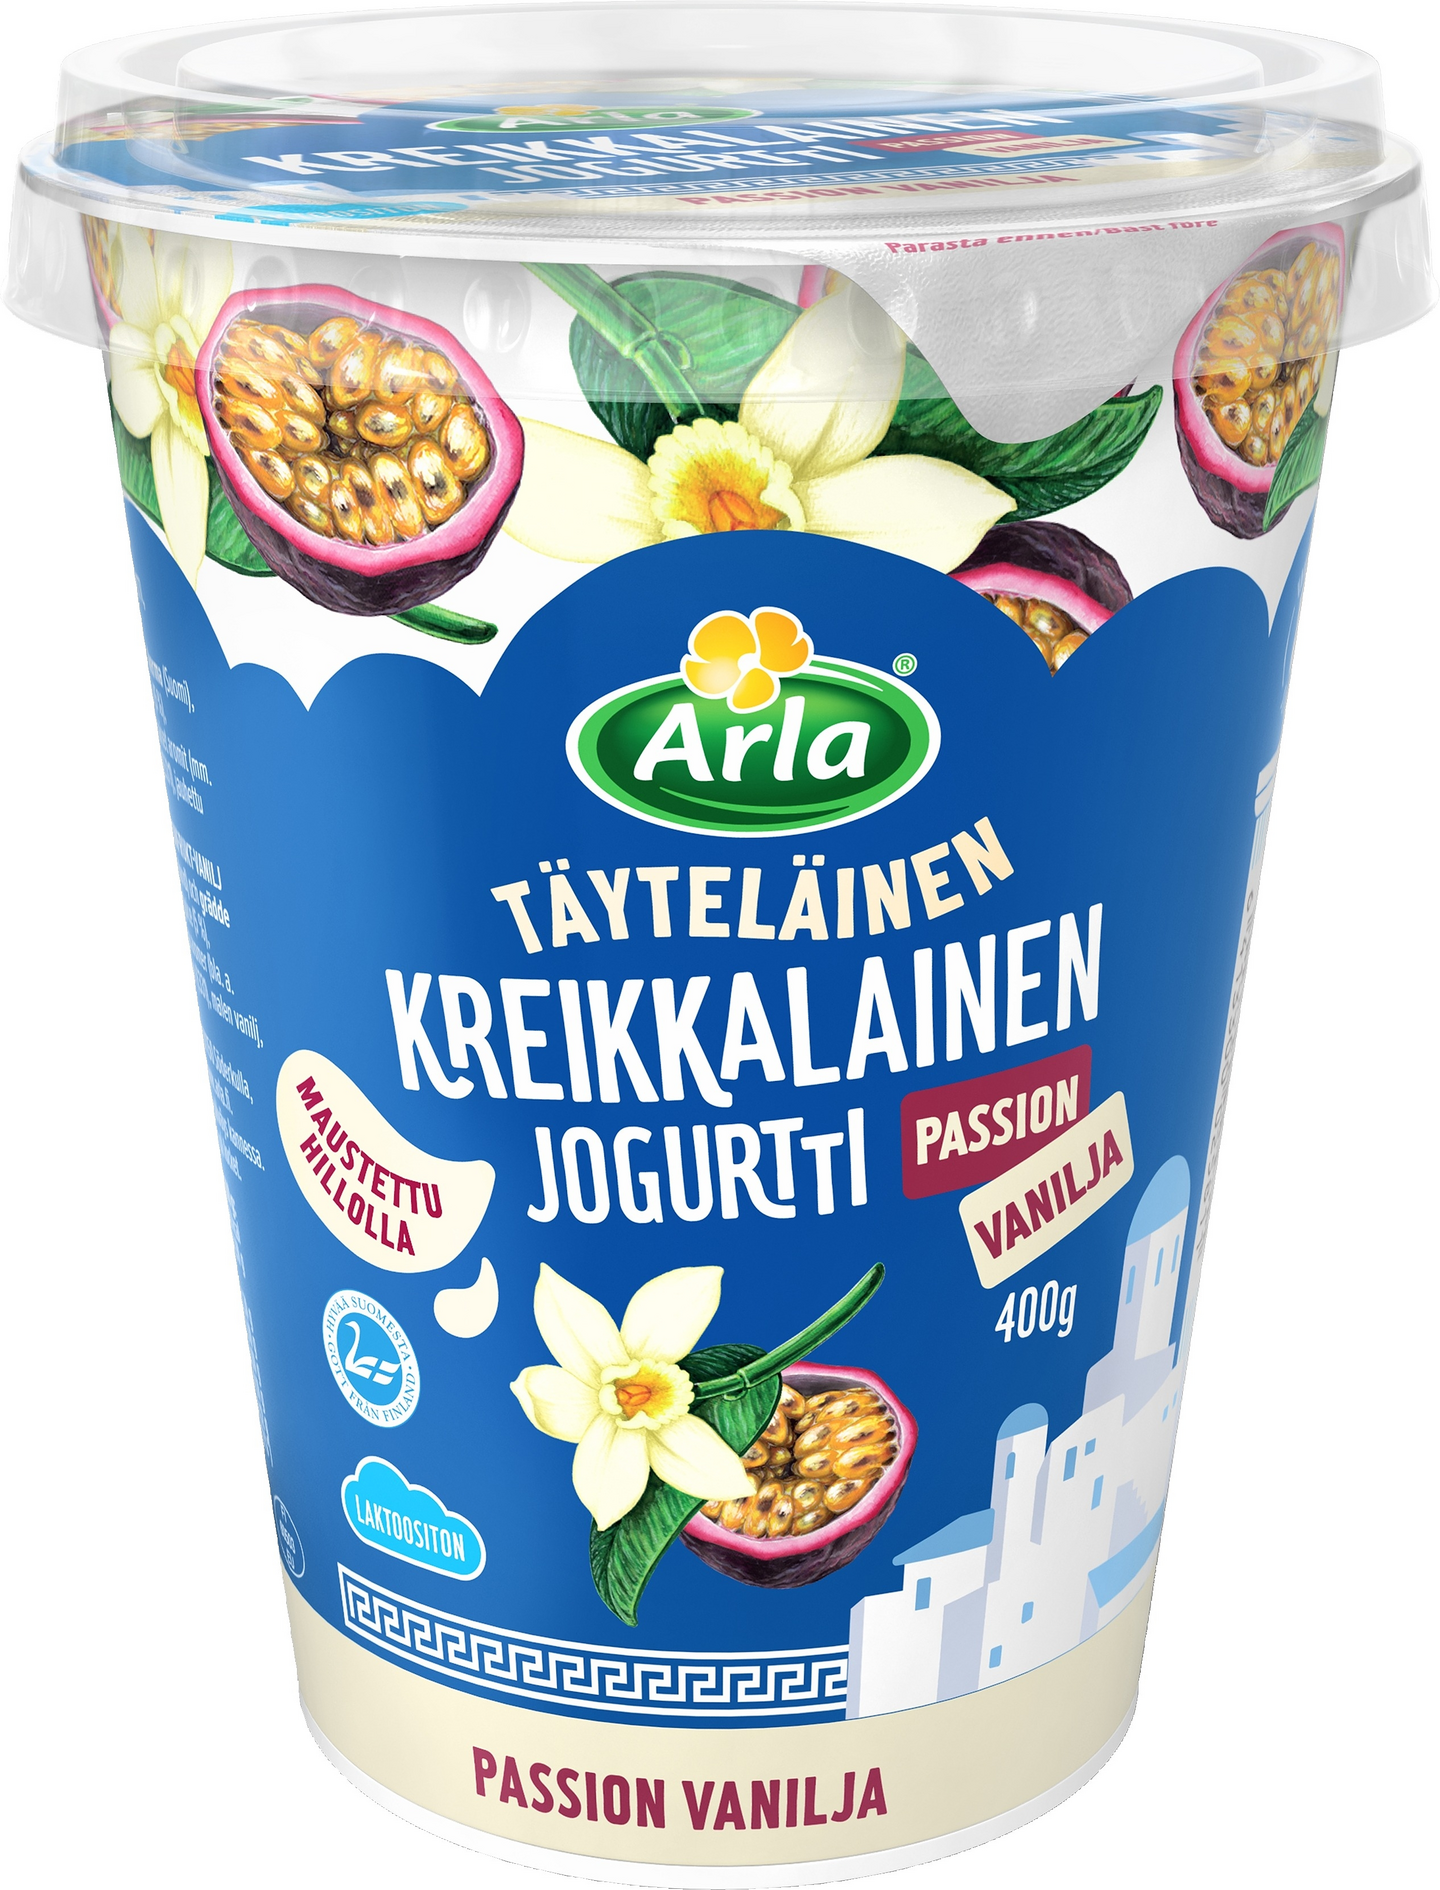 Arla kreikkalainen jogurtti 400g passion-vanilja laktoositon